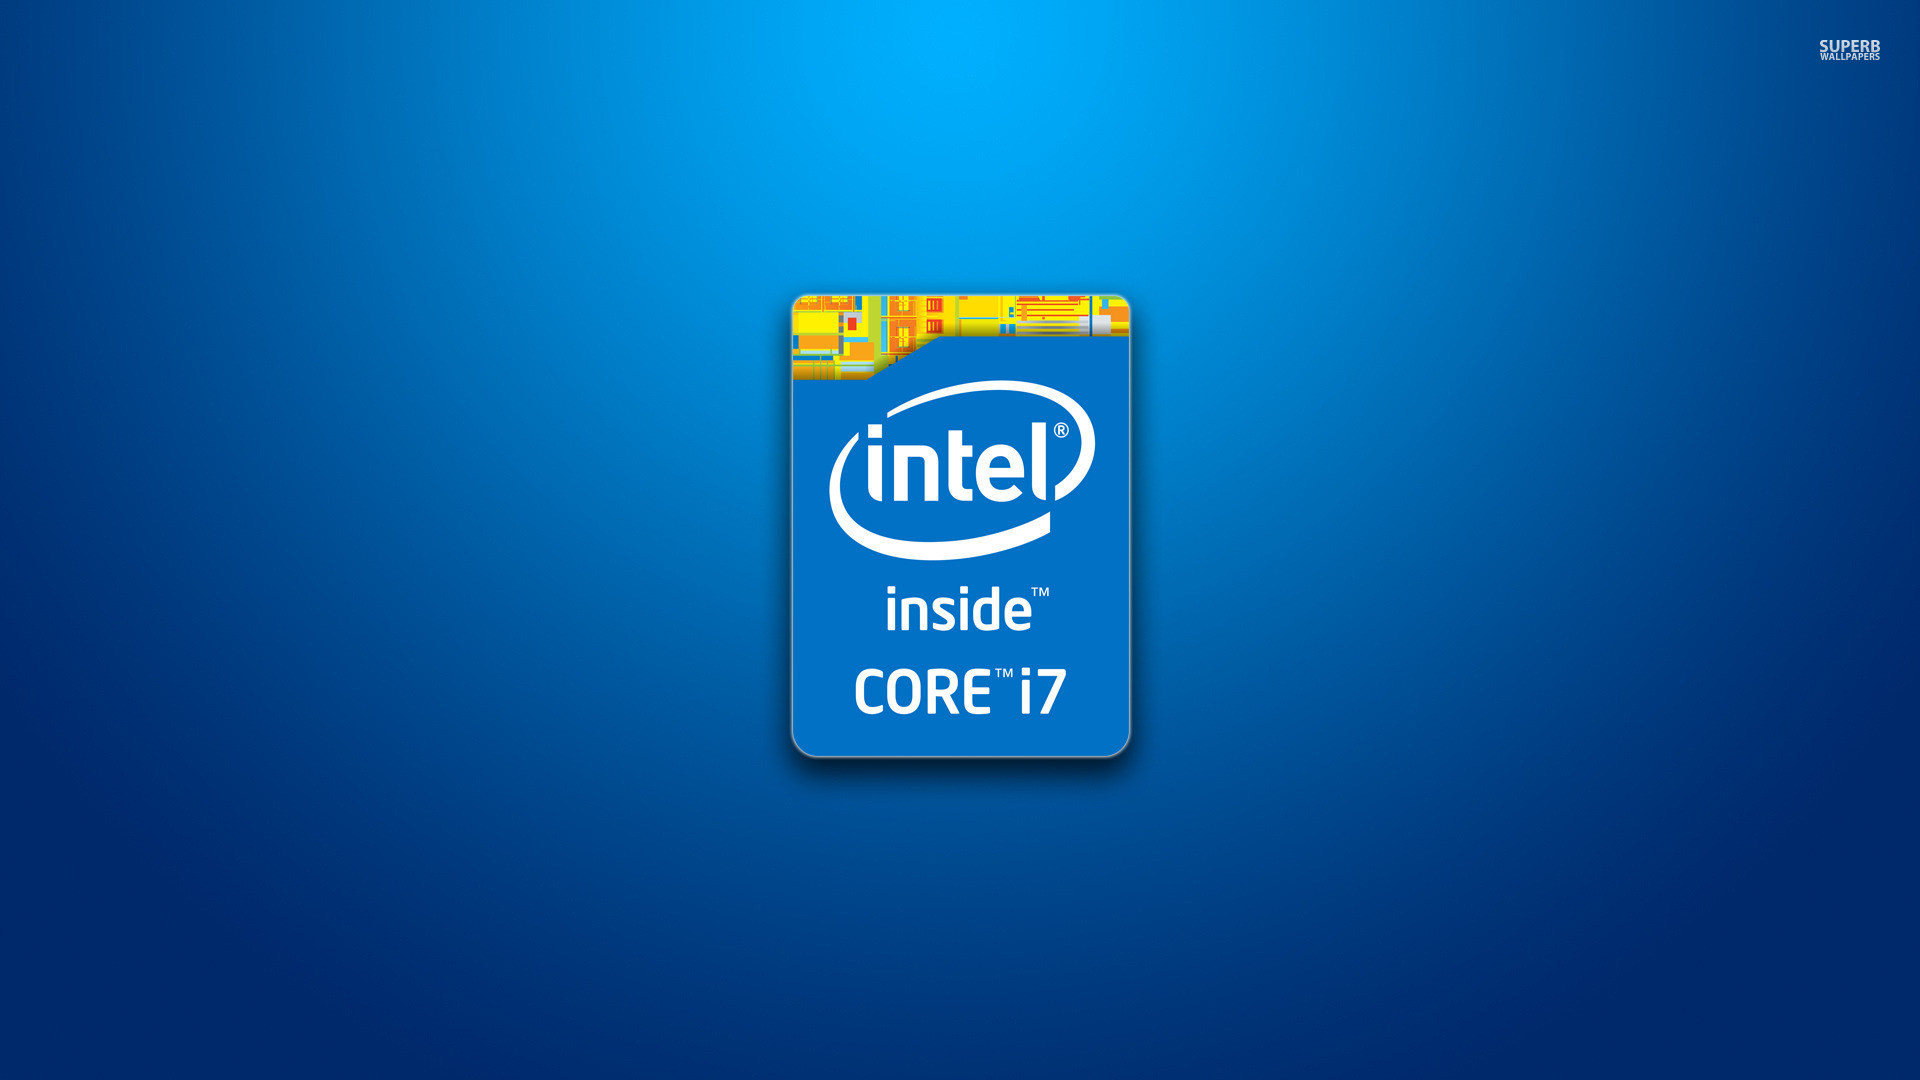 1920x1080 1600x900 Intel I3 Wallpaper Eworld price list: intel core i5-3450 3rd .